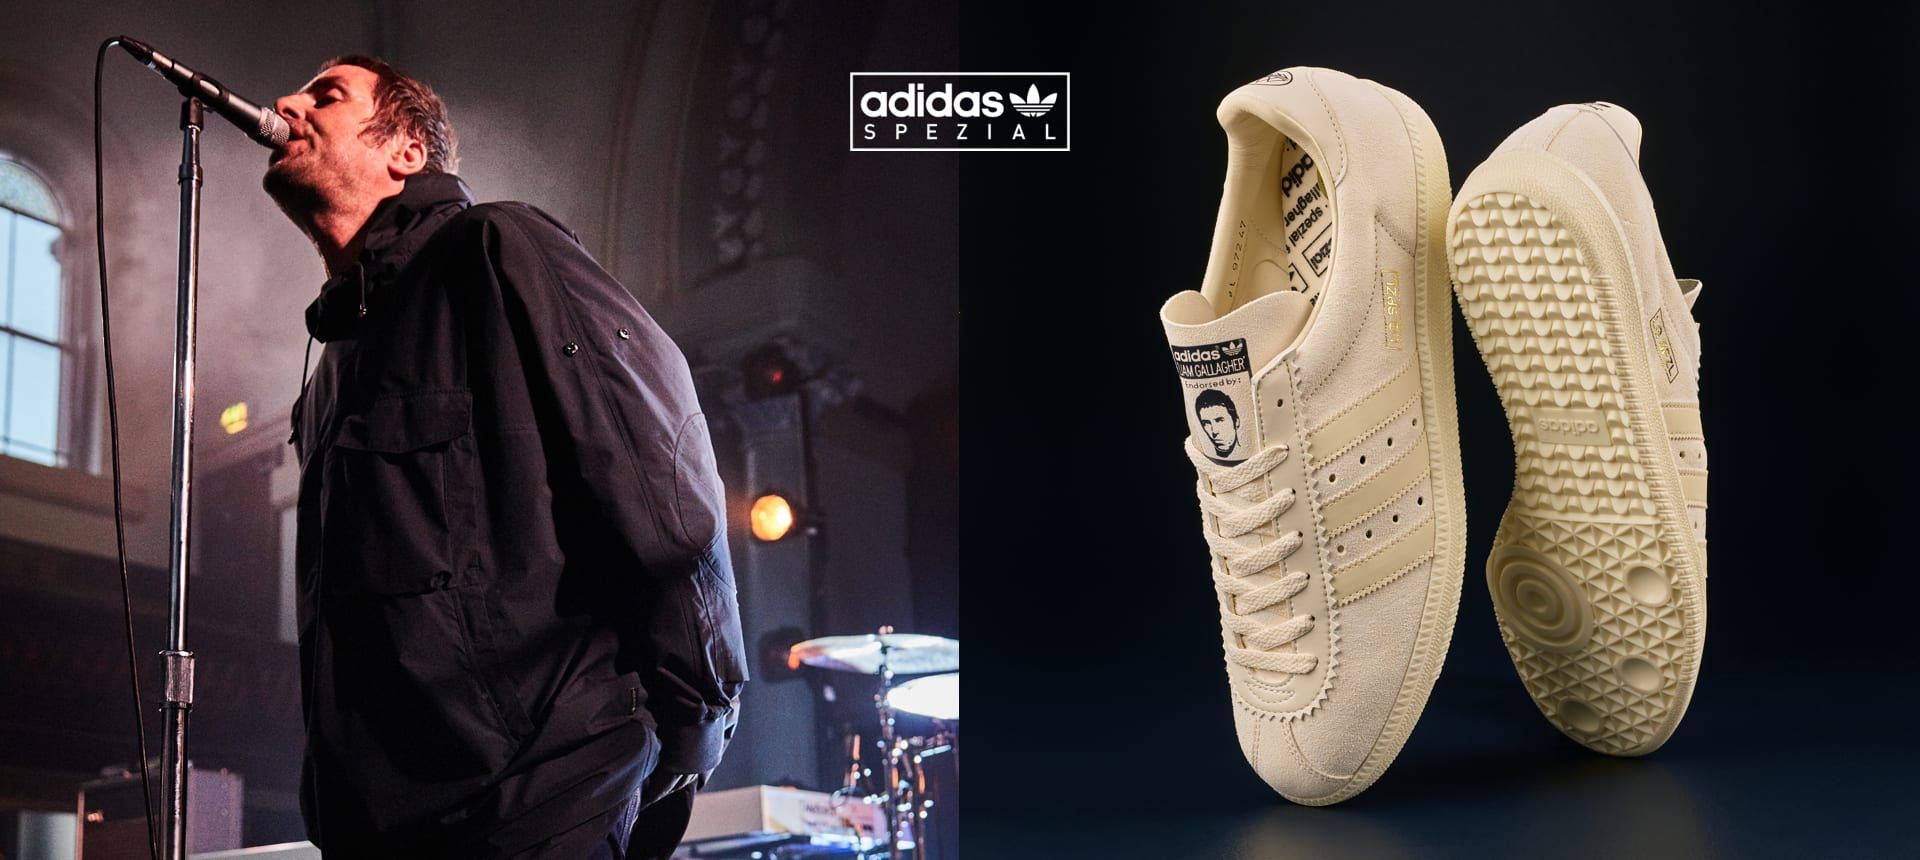 Adidas lanza unas zapatillas junto a Liam Gallagher